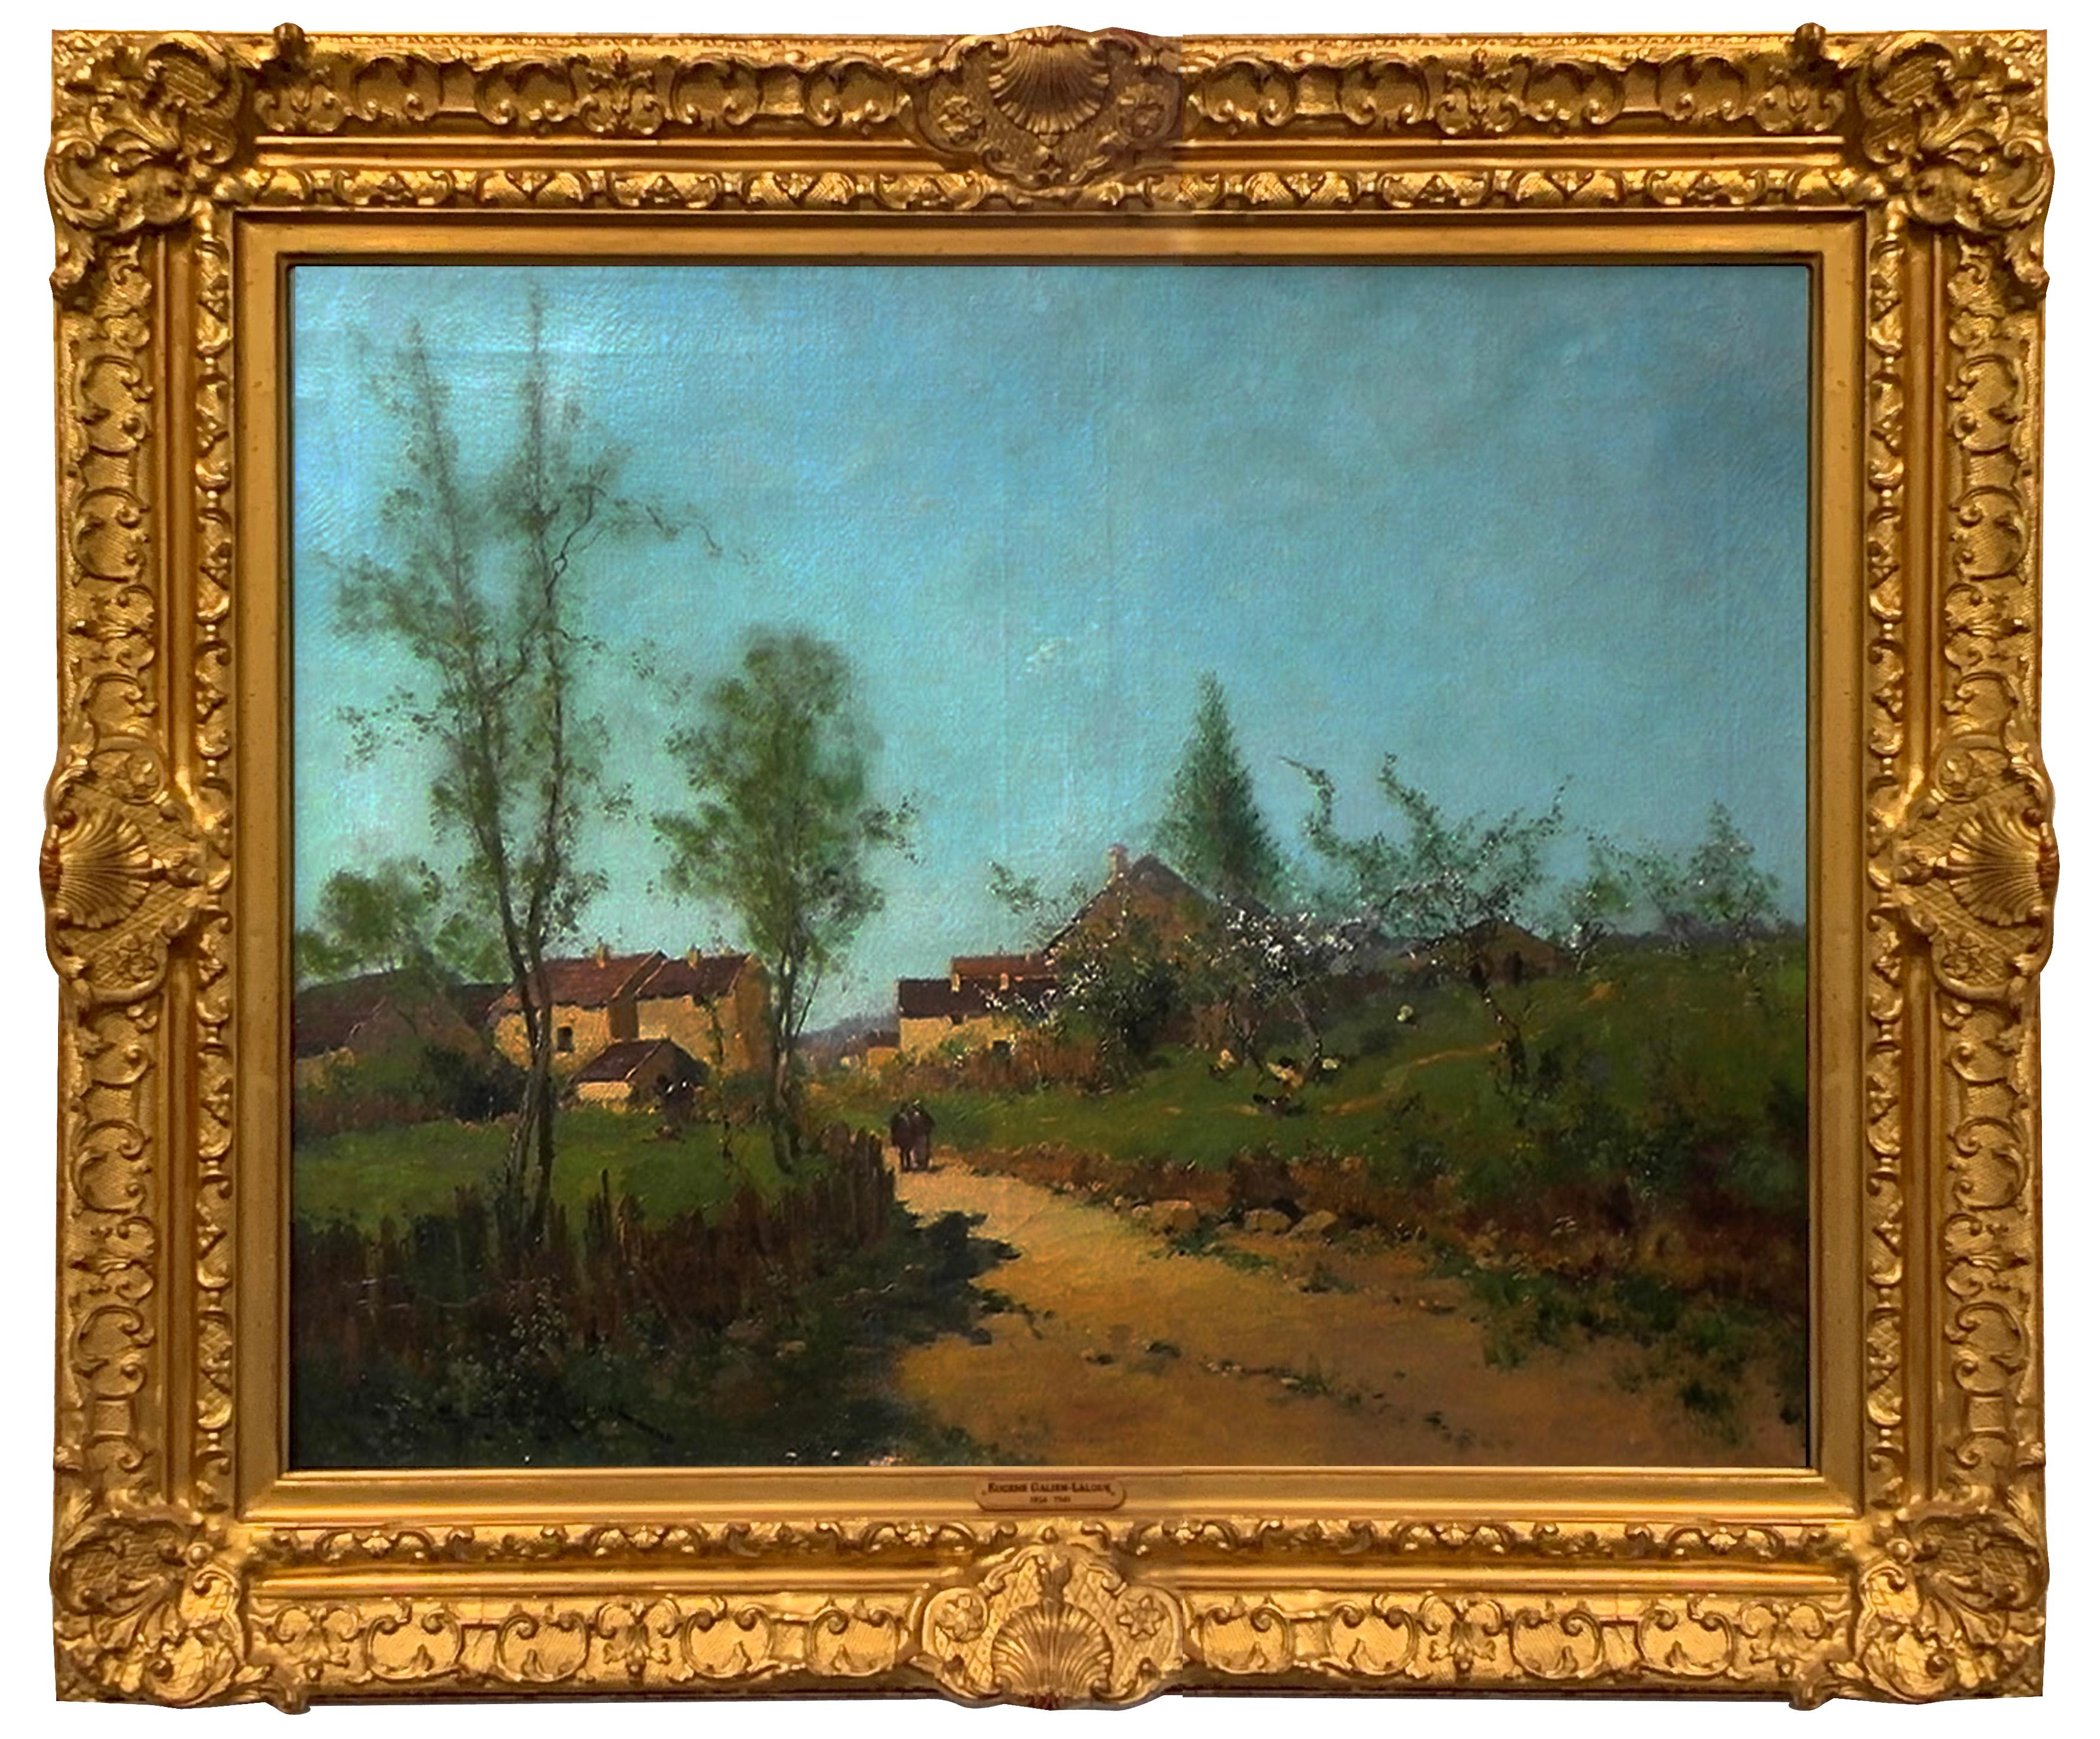 Landscape Painting Eugene Galien-Laloue - "Country Stroll", Galien-Laloue, huile sur toile, impressionnisme français vers 1932